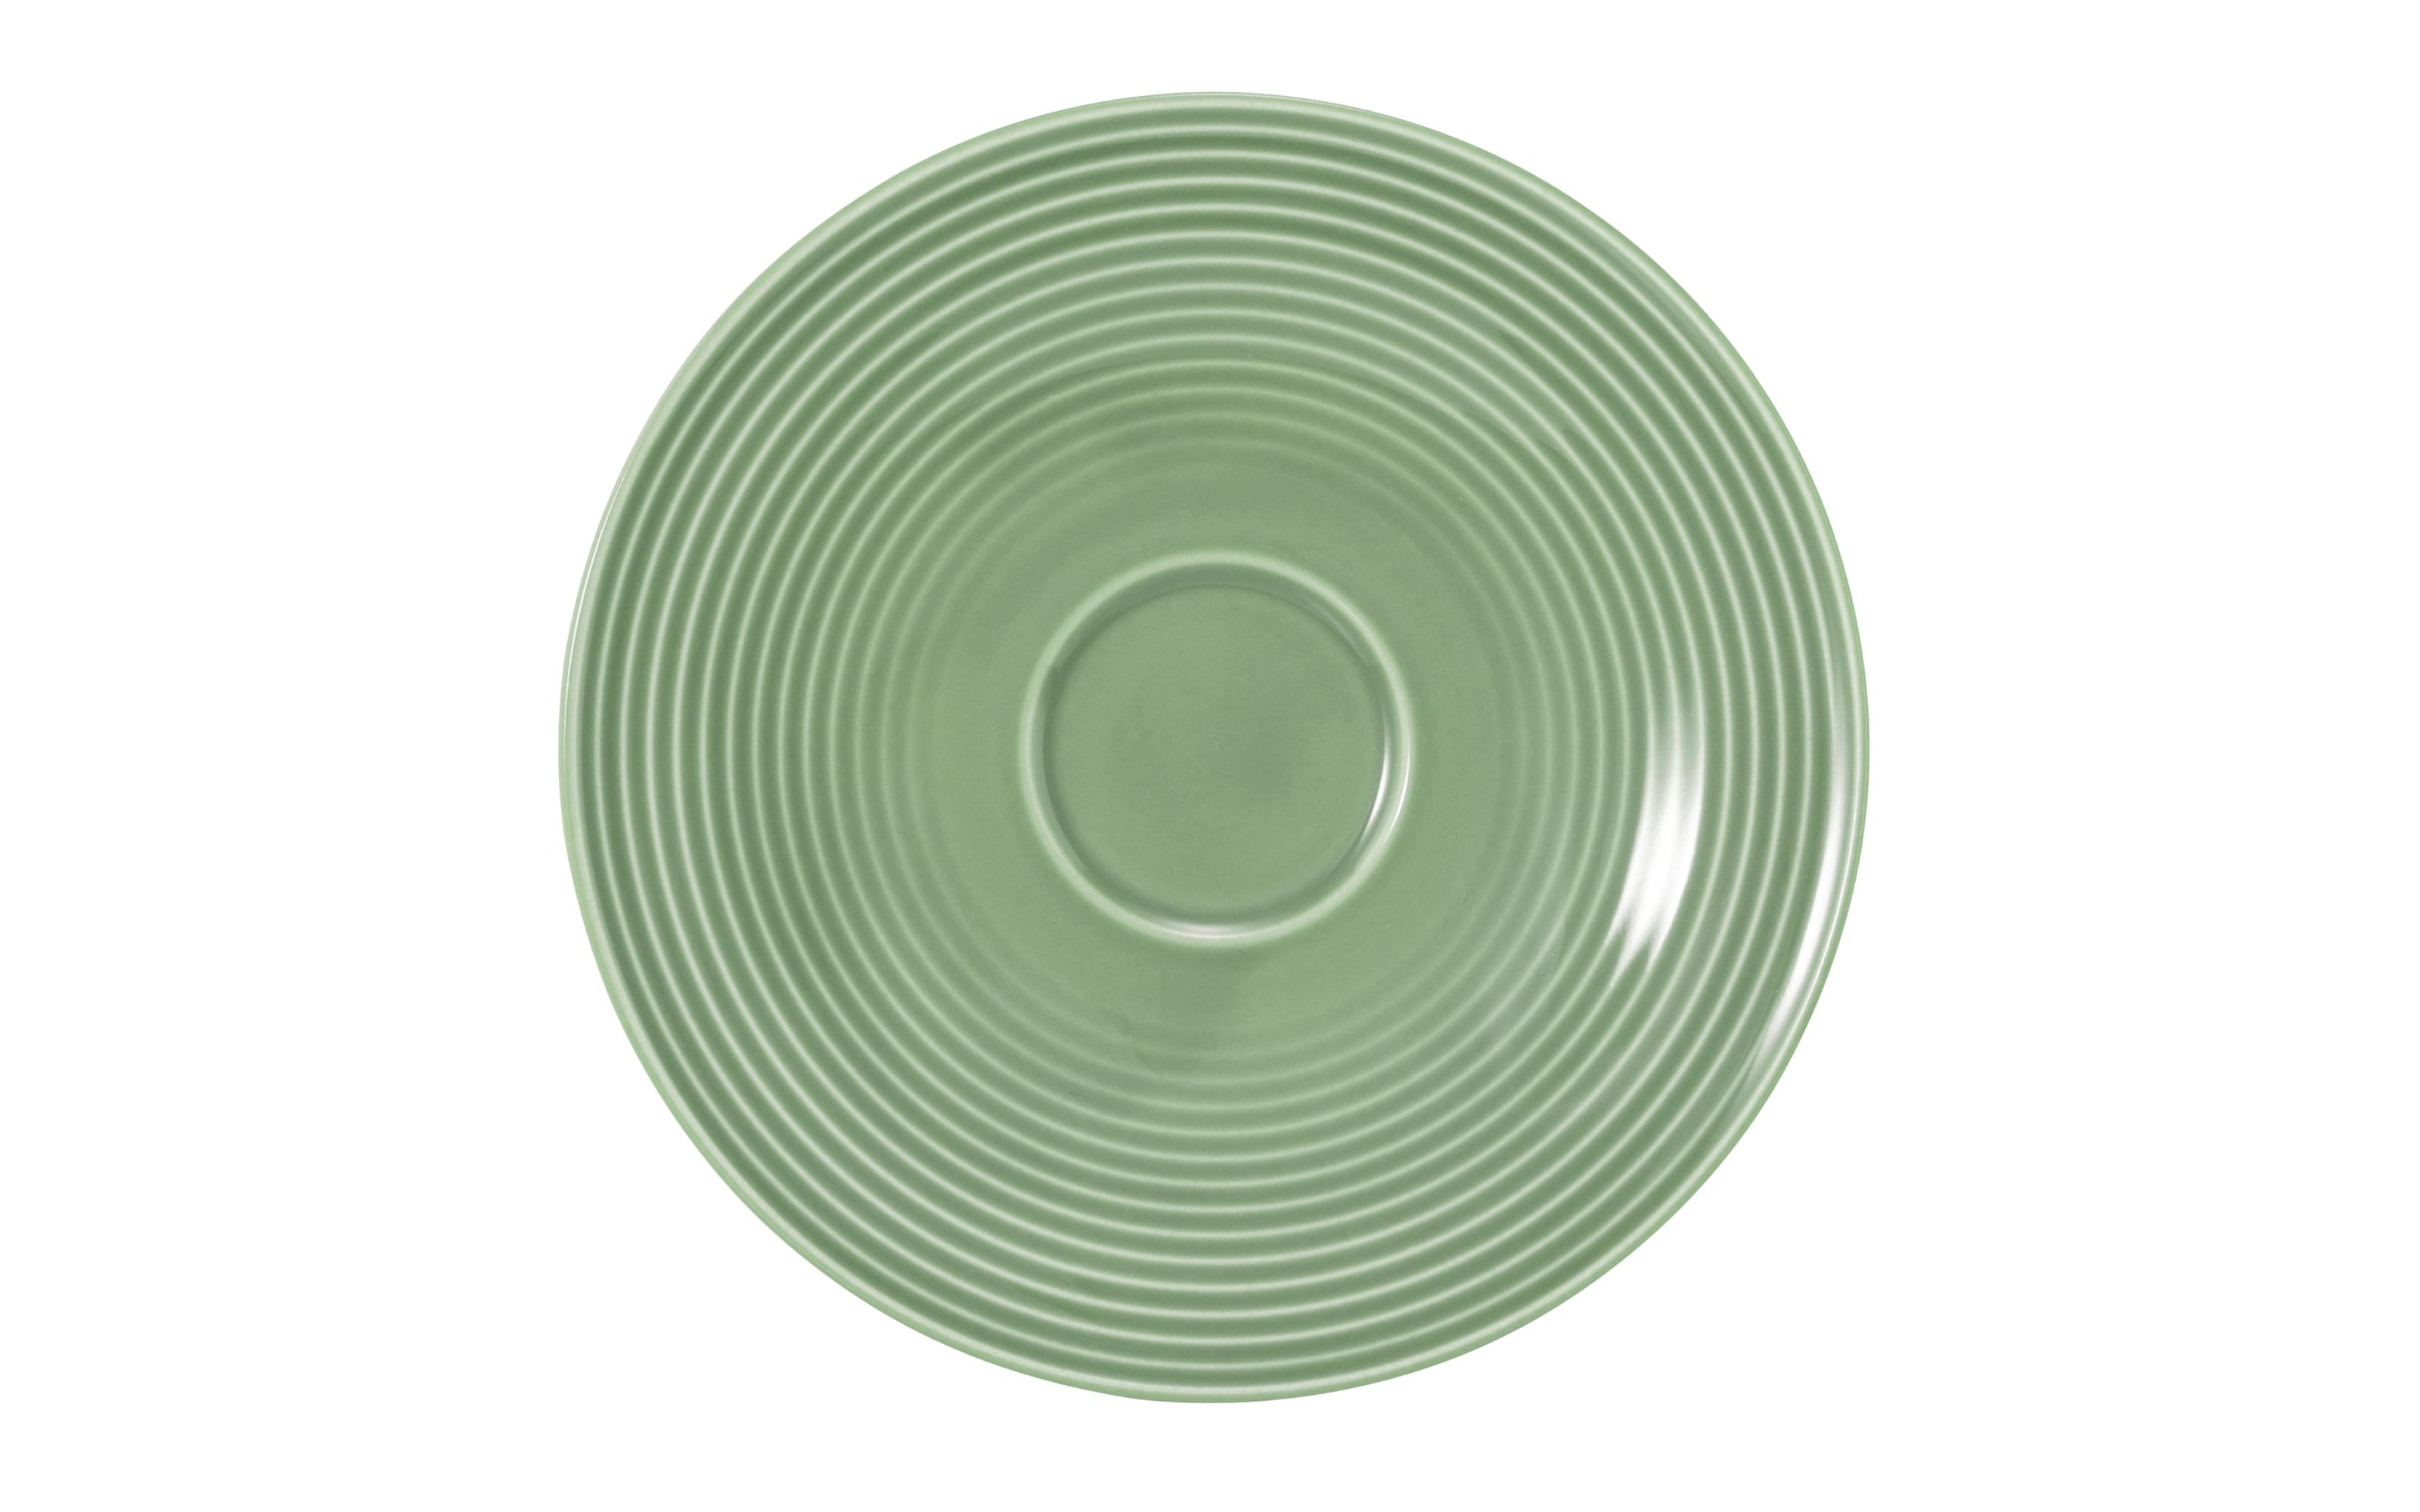 Kombi-Untertasse Beat in salbeigrün, 16,5 cm